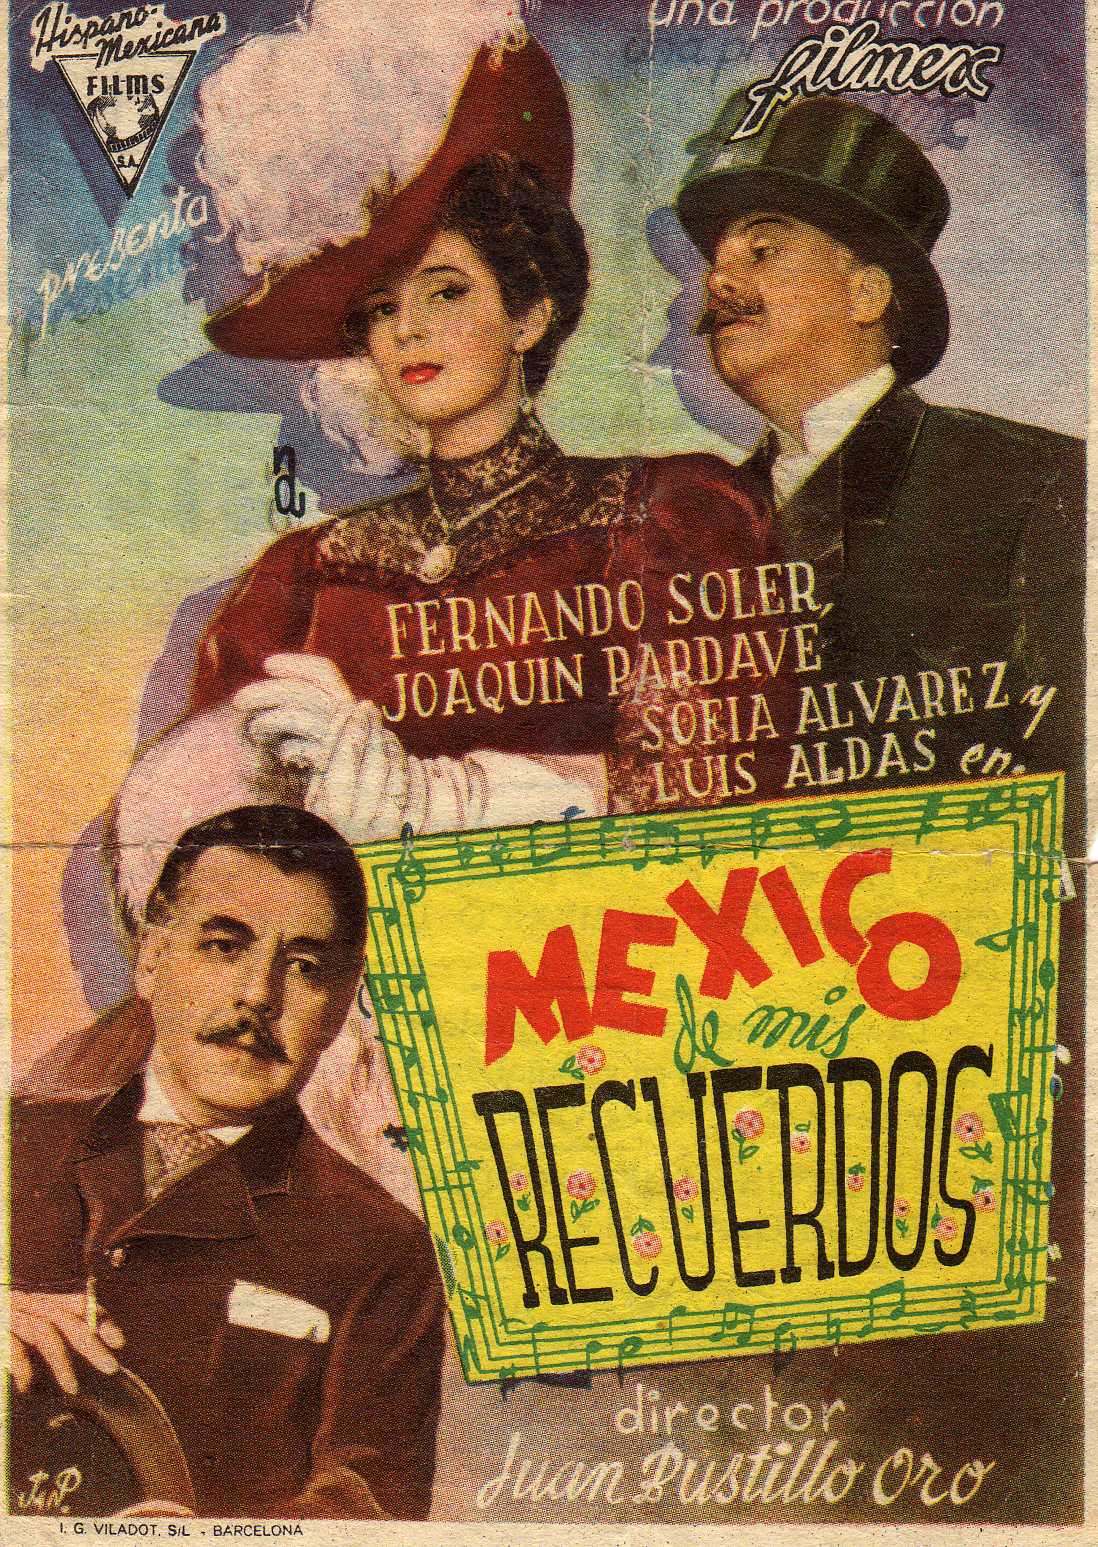 [Mexico+de+mis+recuerdos+1946.jpg]